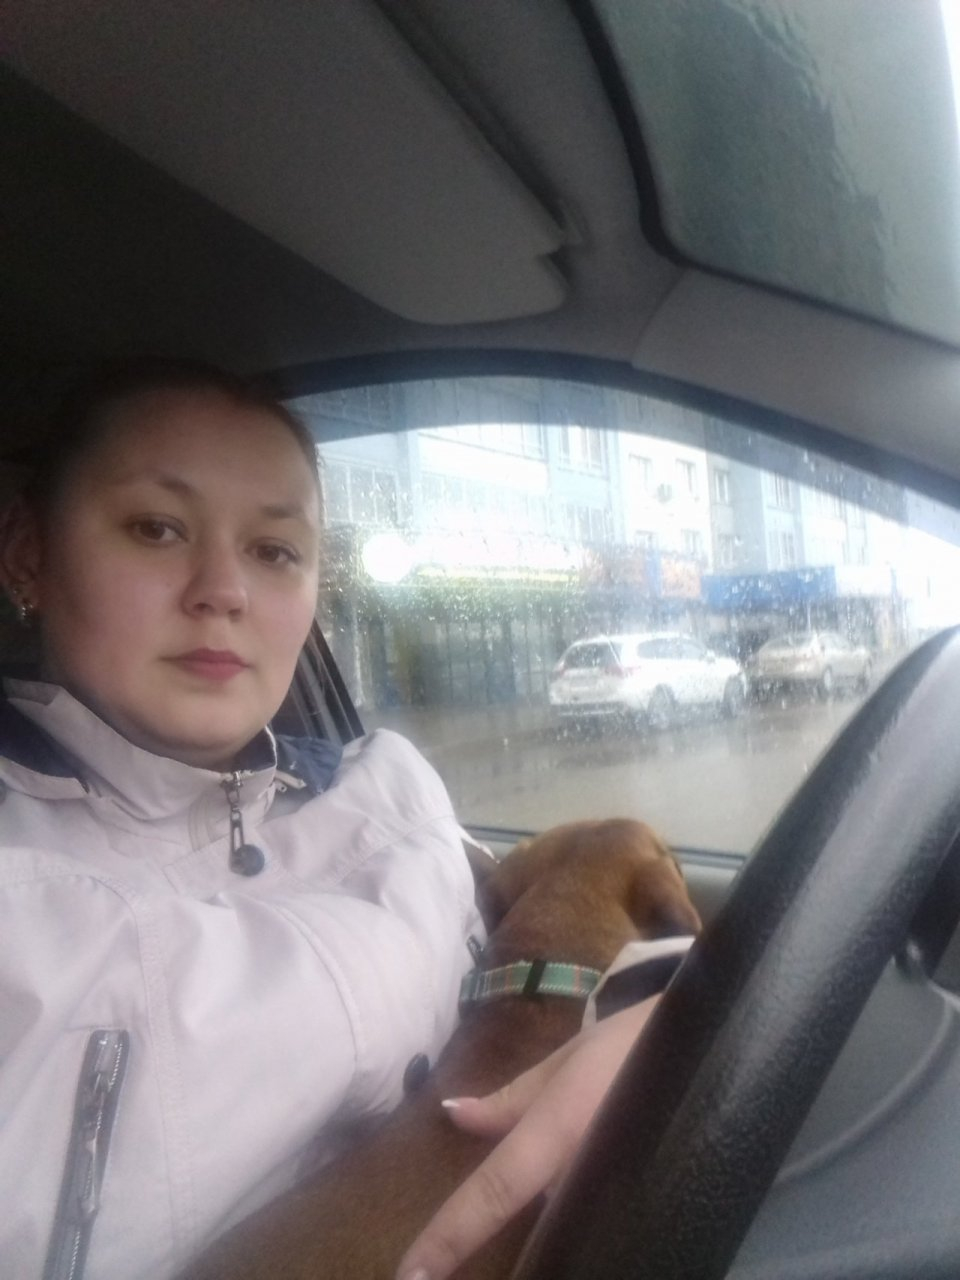 "Ходила с собакой на работу, чтобы кормить ее 6 раз в день": история девушки из Кирова, помогающей бездомным таксам